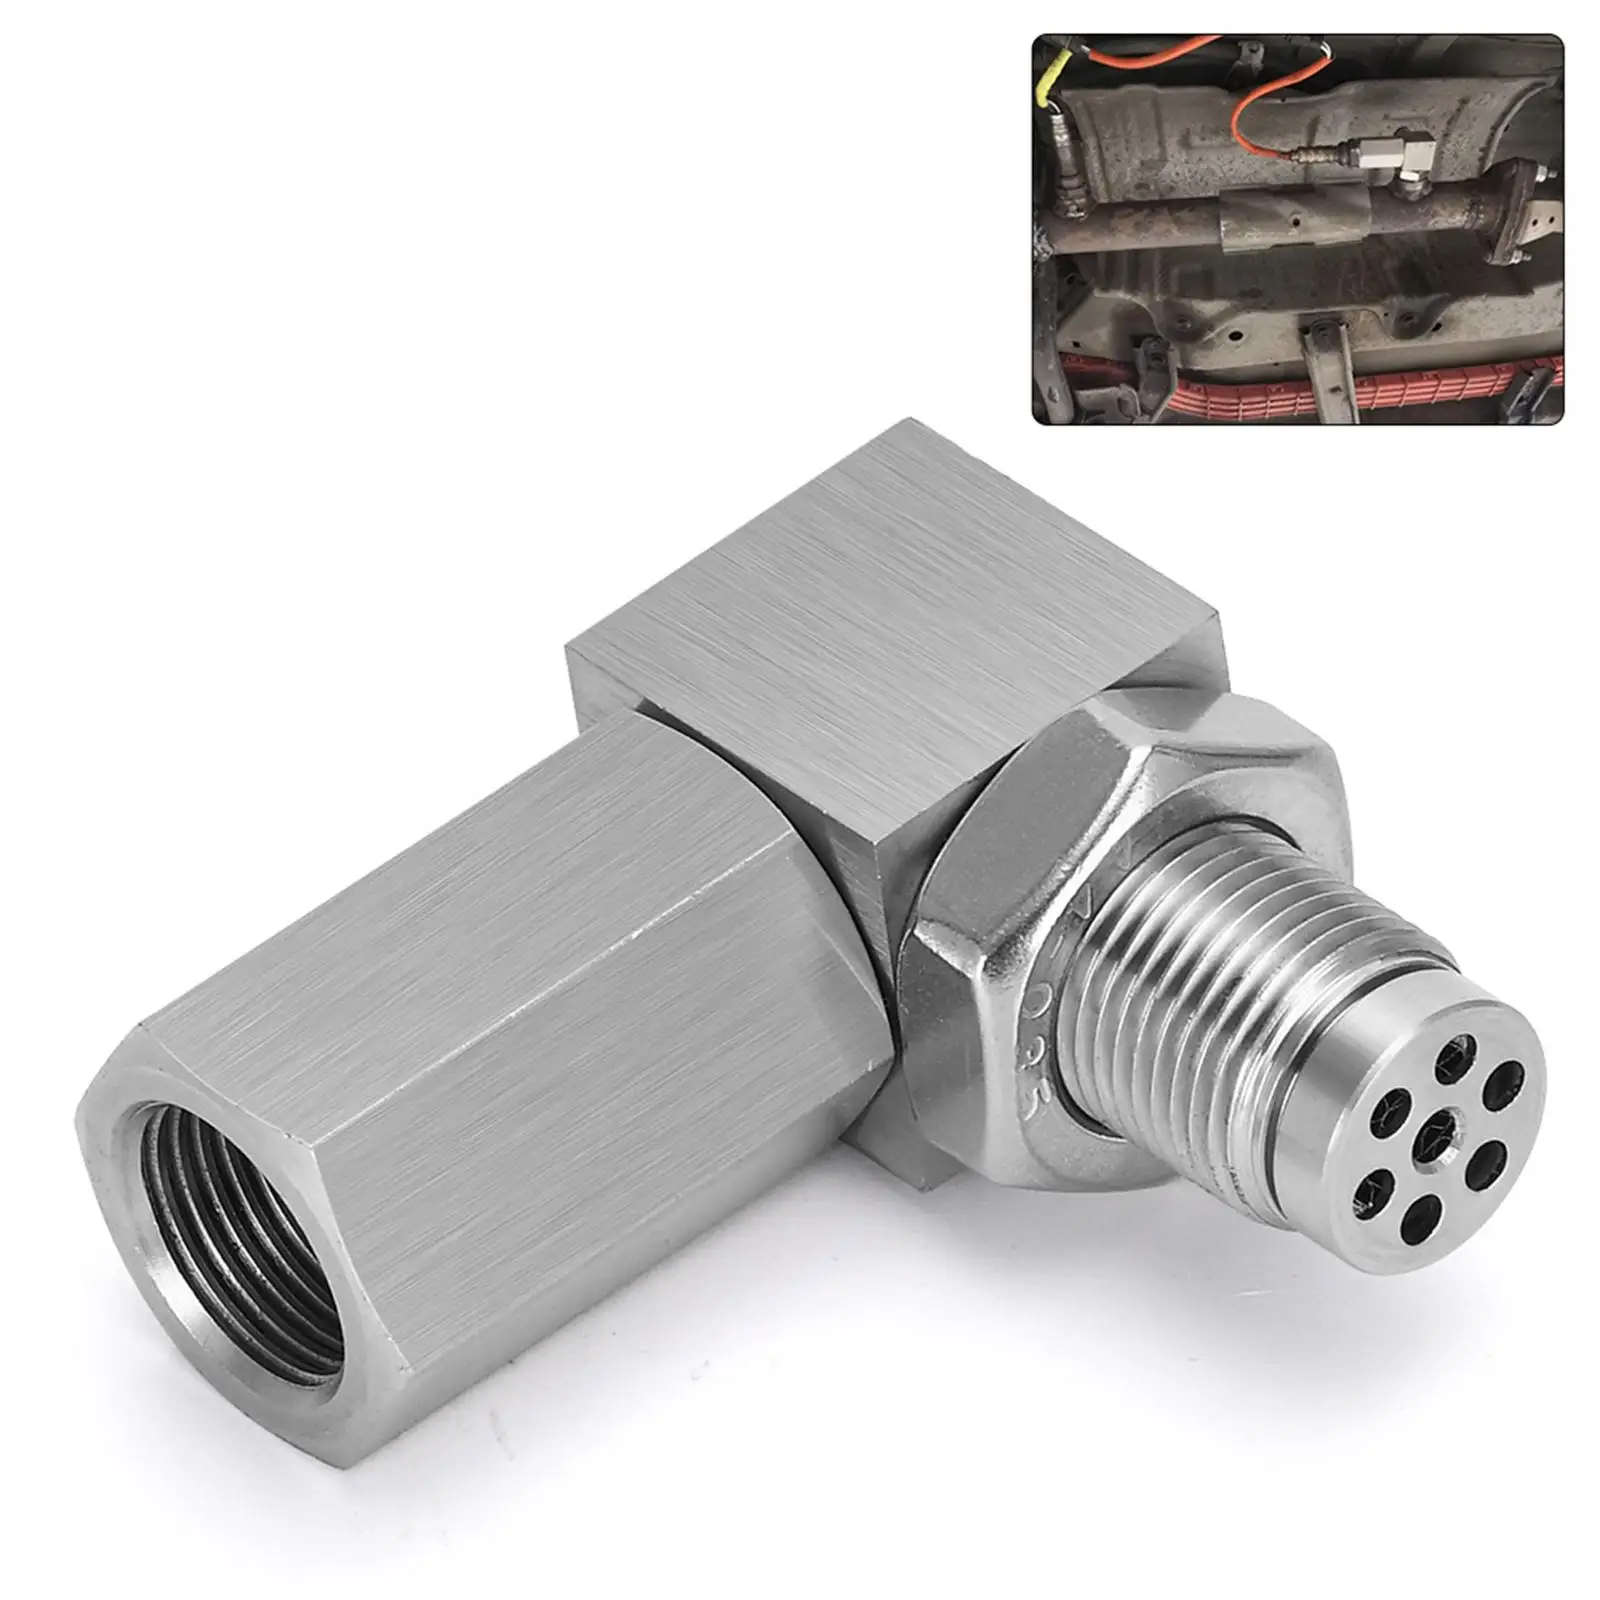 2xUniversal Oxygen Sensor Extender Spark Plug Adapter 90 Degree Accessories